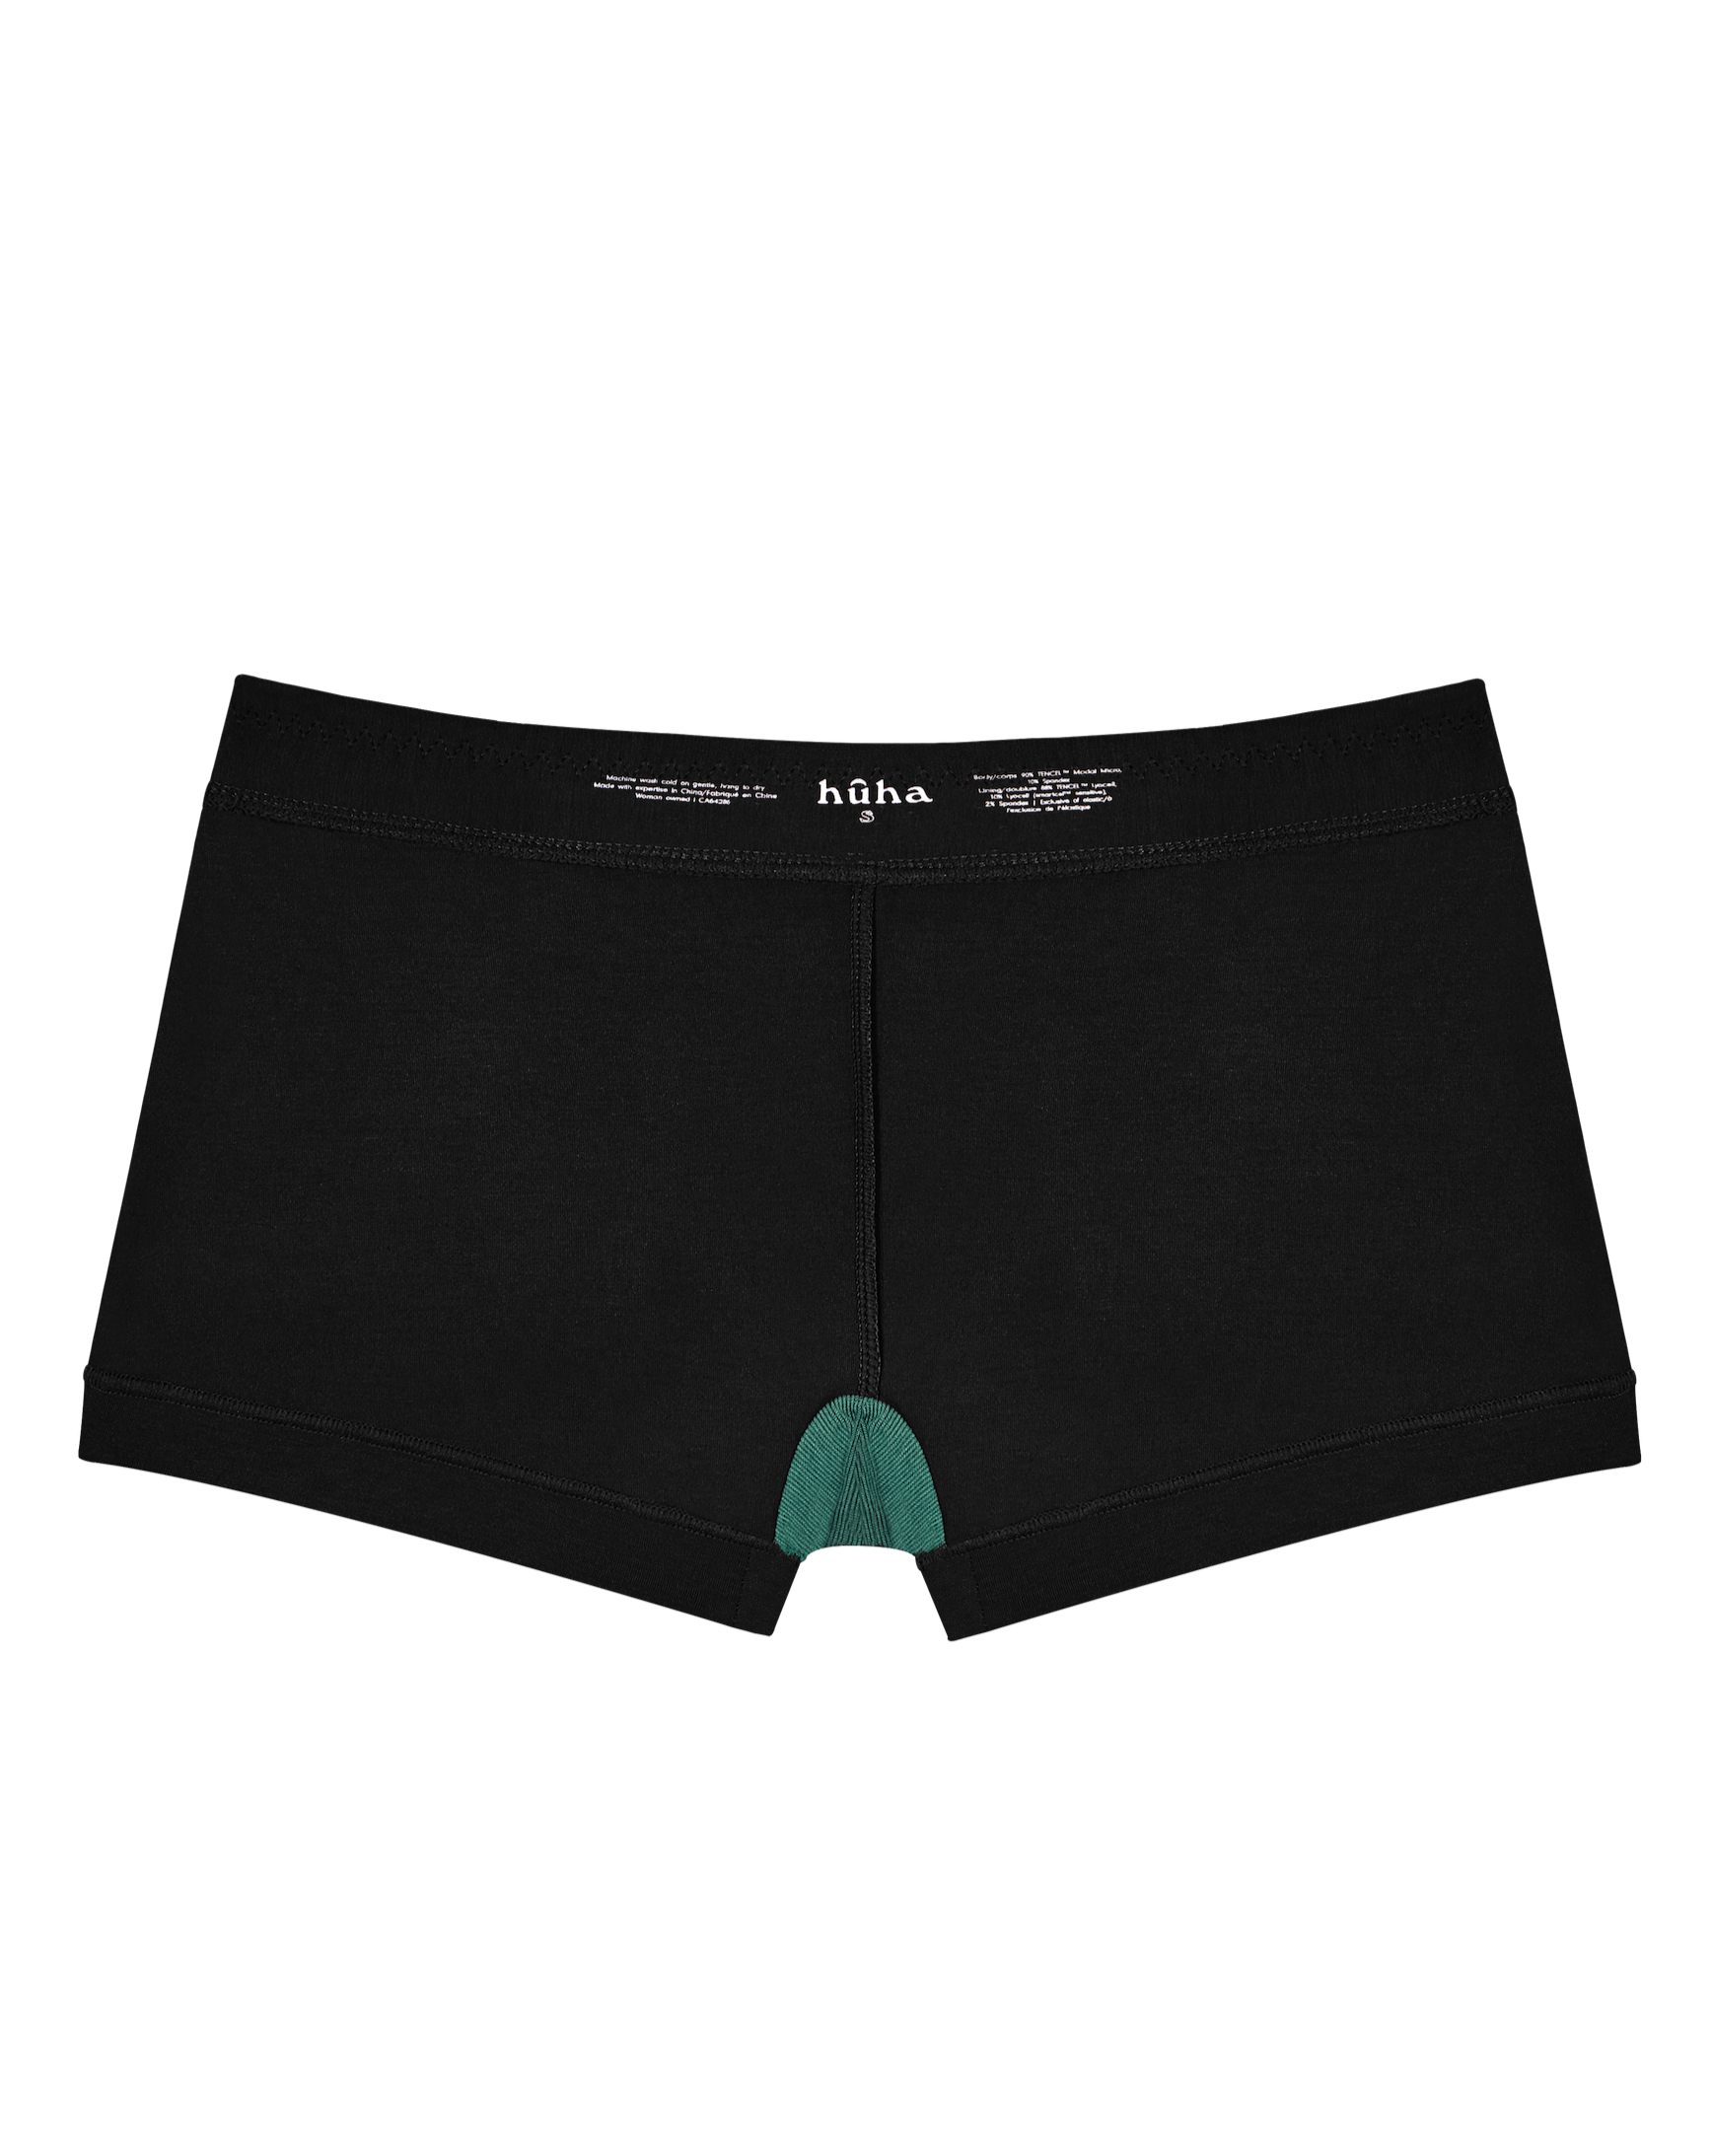 Woxer Womens Boxer Briefs Underwear, Star 3” Brazil